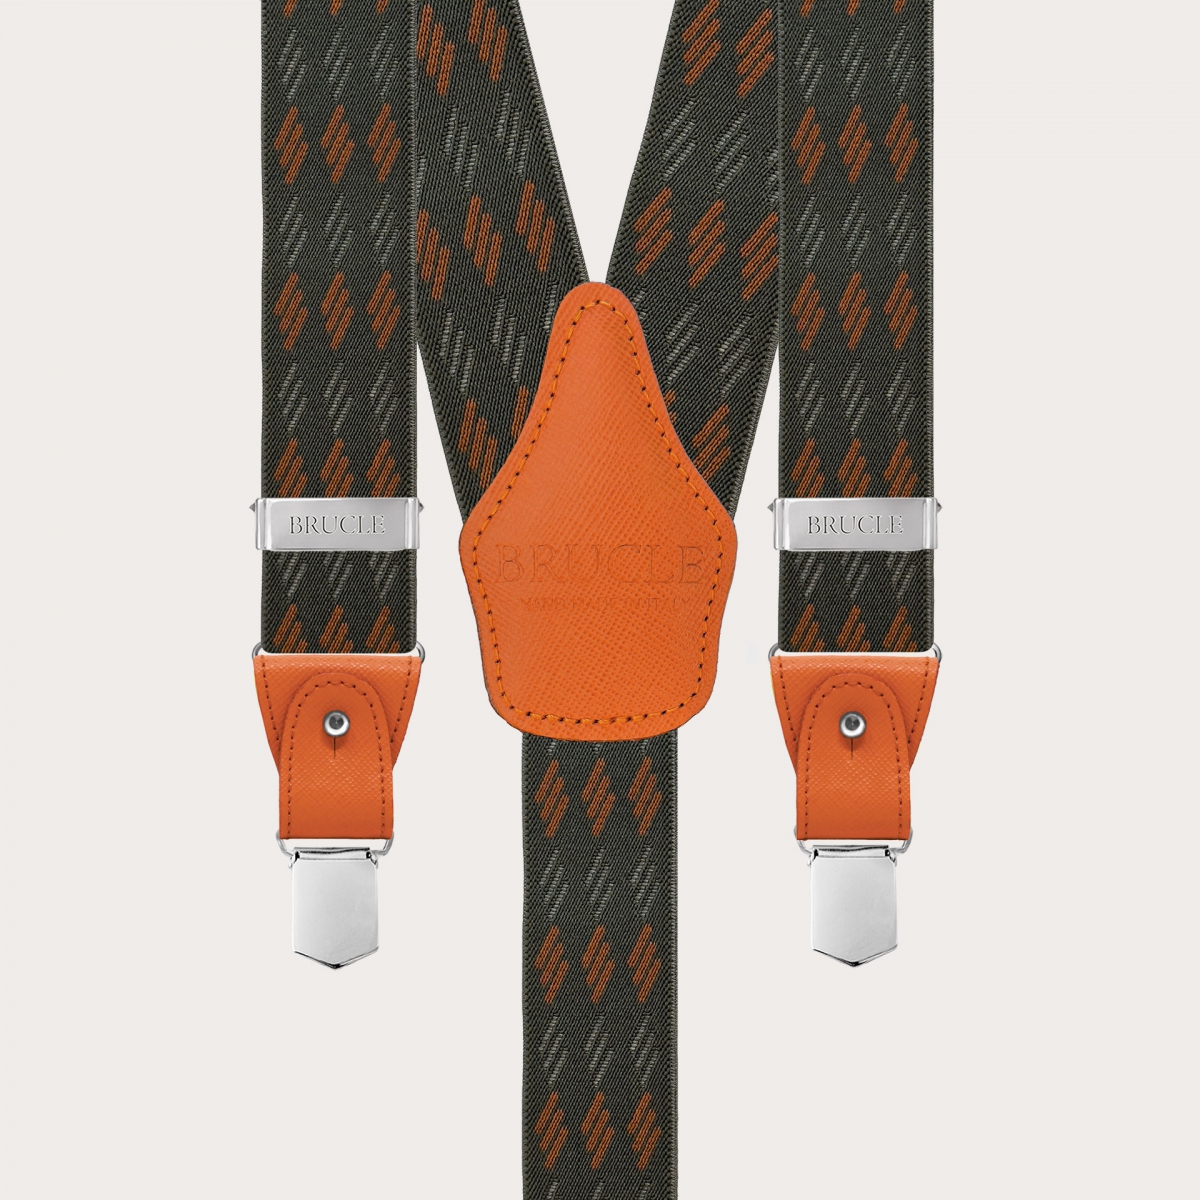 Grün-orange gestreifte elastische Hosenträger für Knöpfe oder Clips